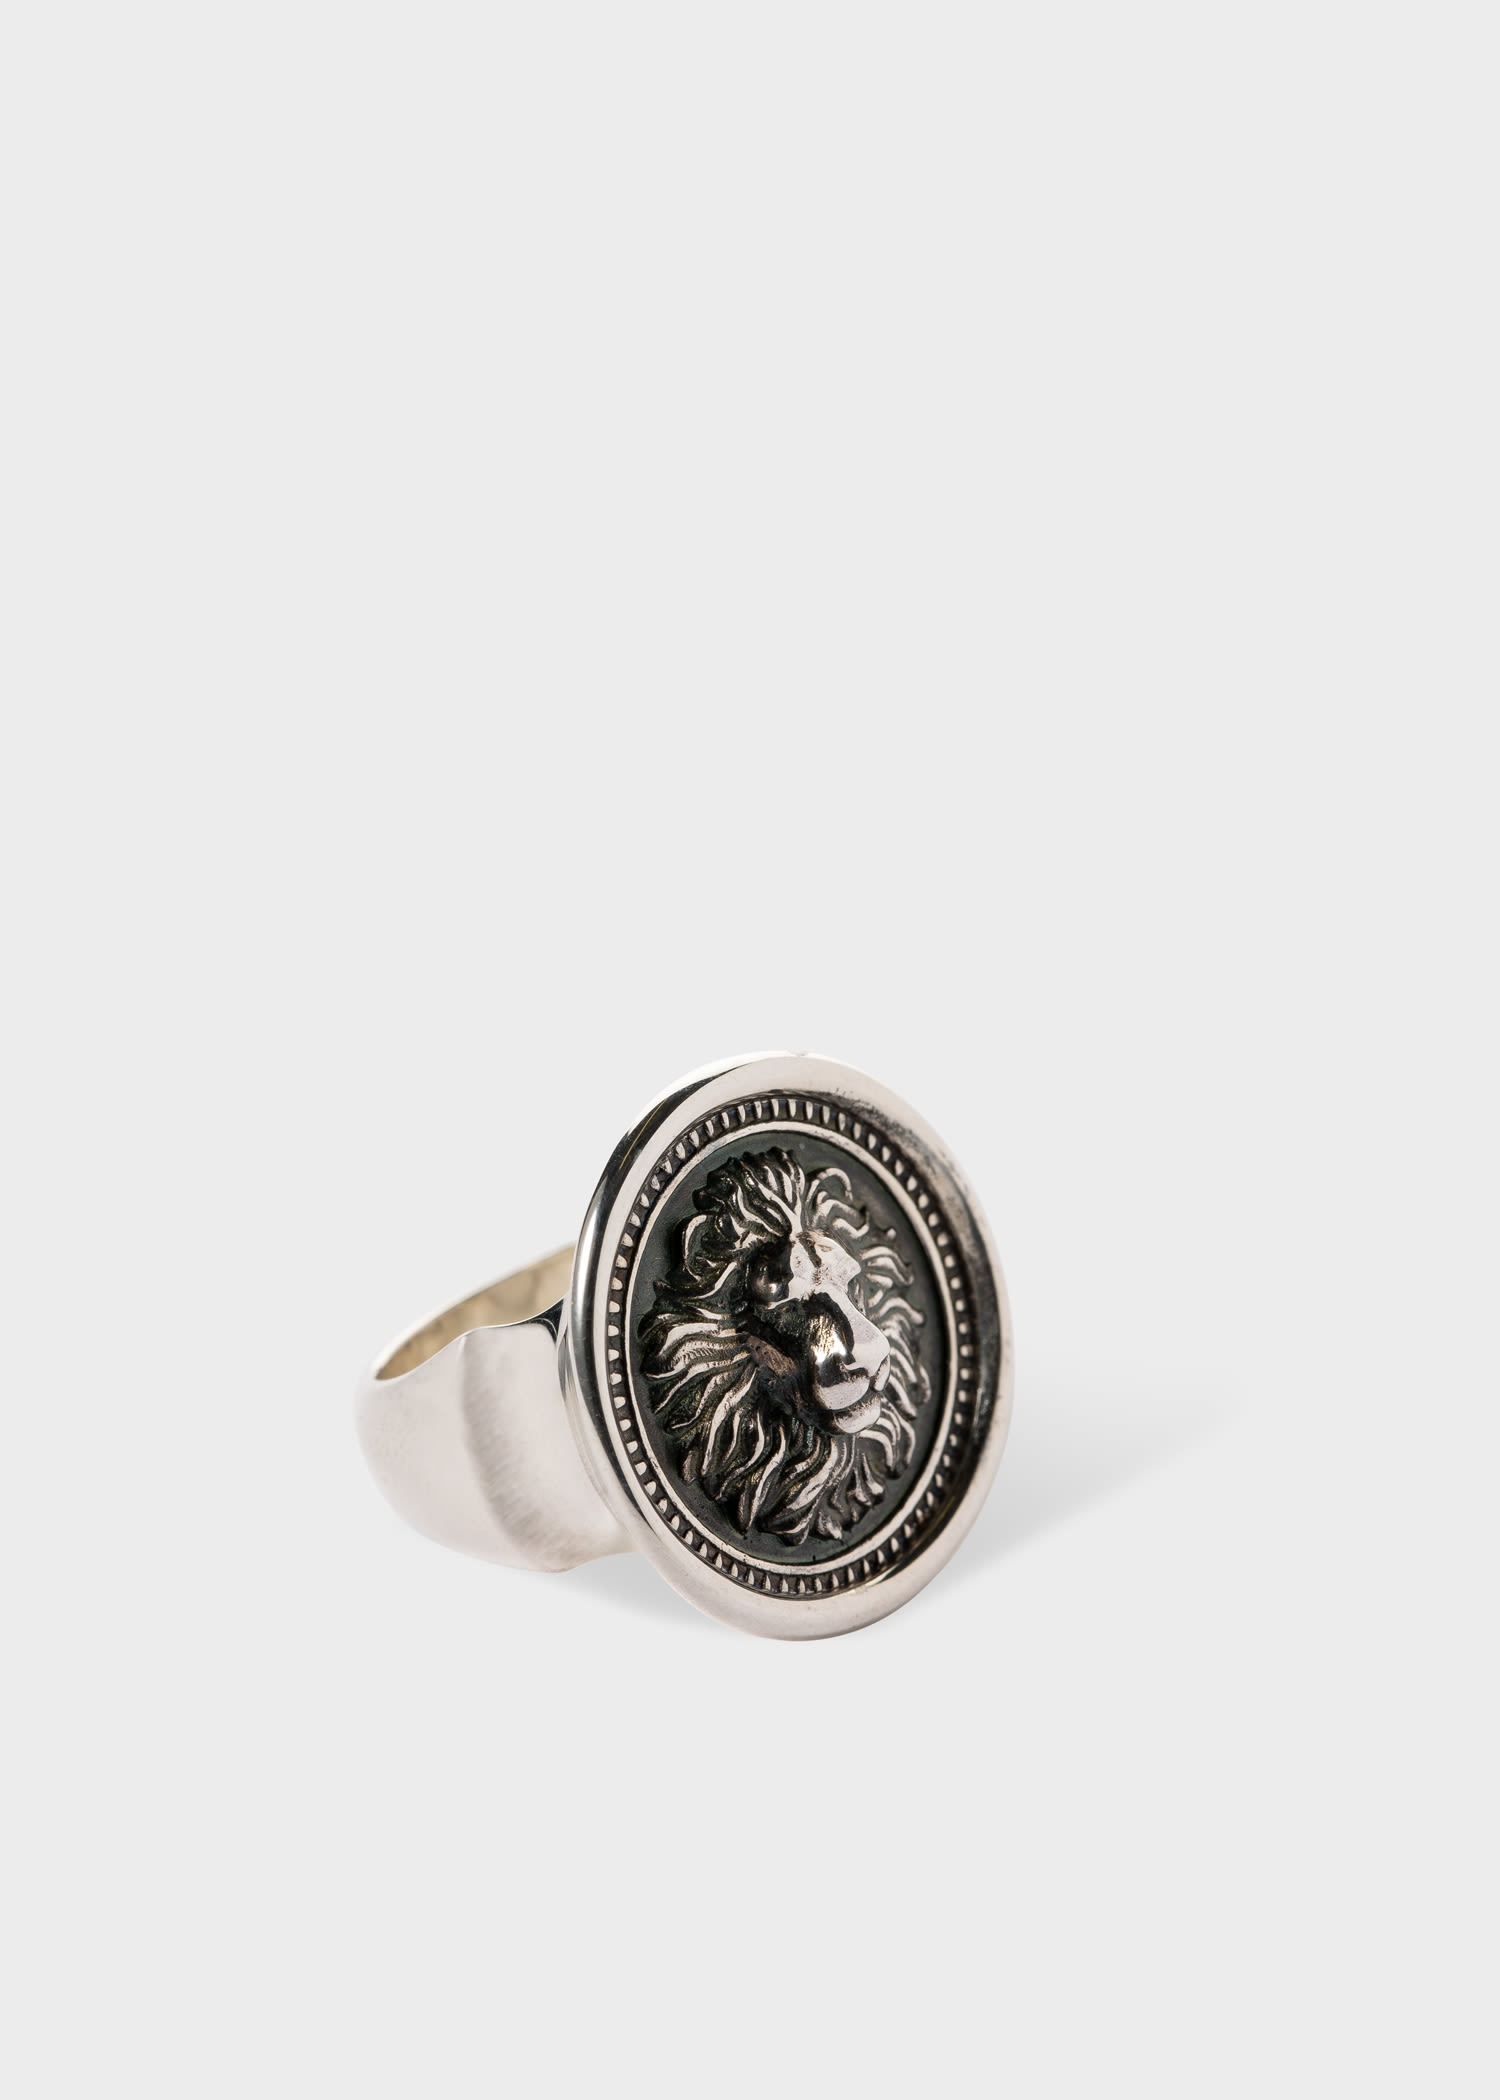 Oxidised Silver 'Loewenkind' Lion Ring - 1